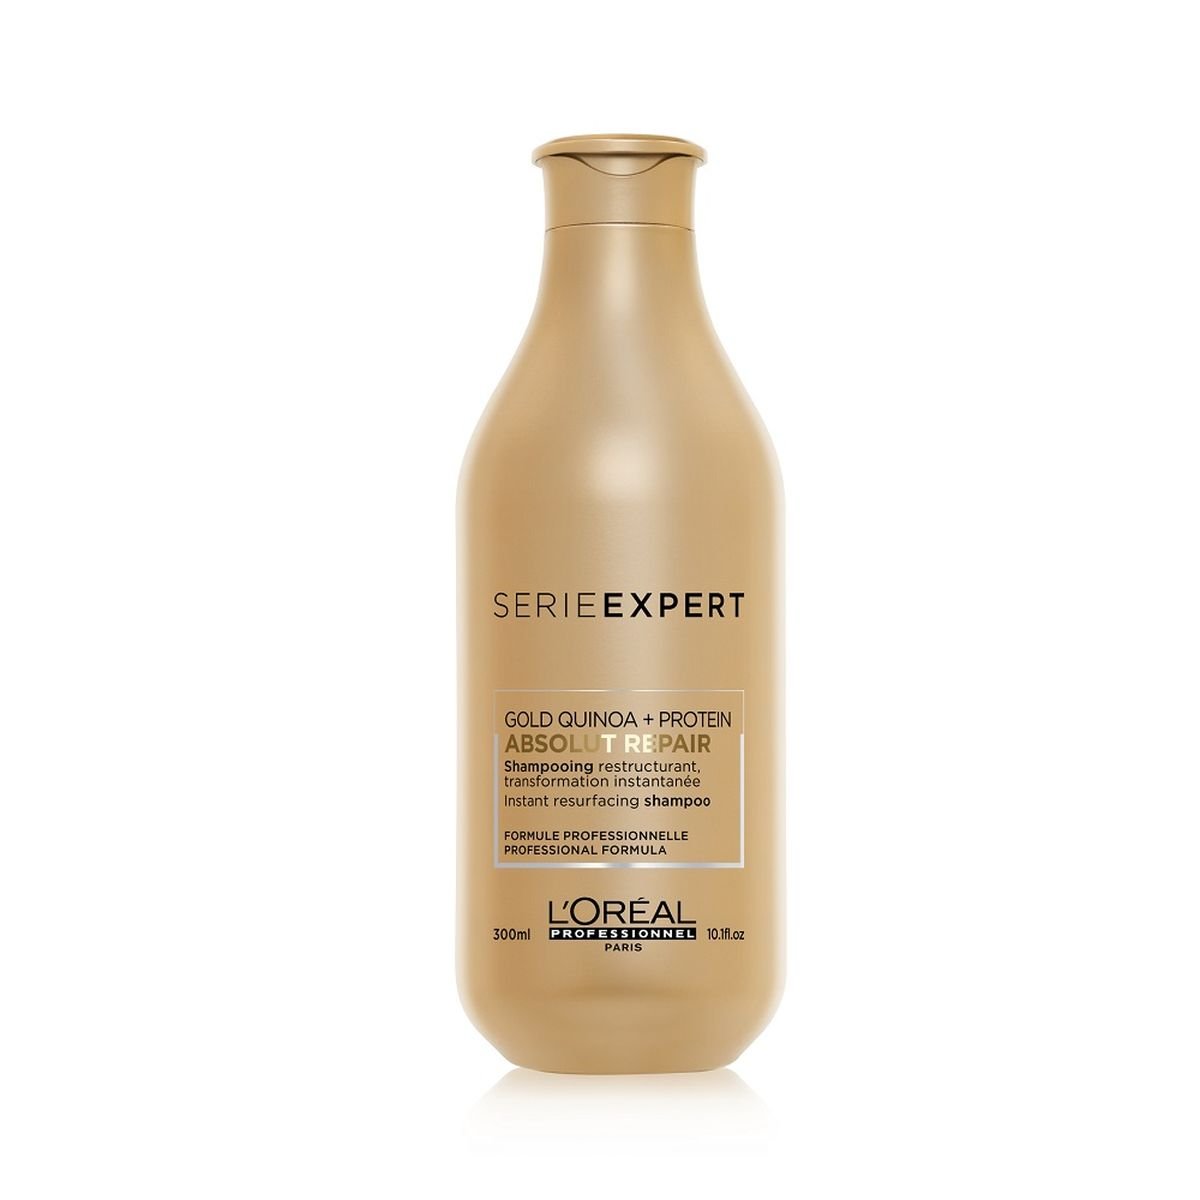 loreal expert szampon